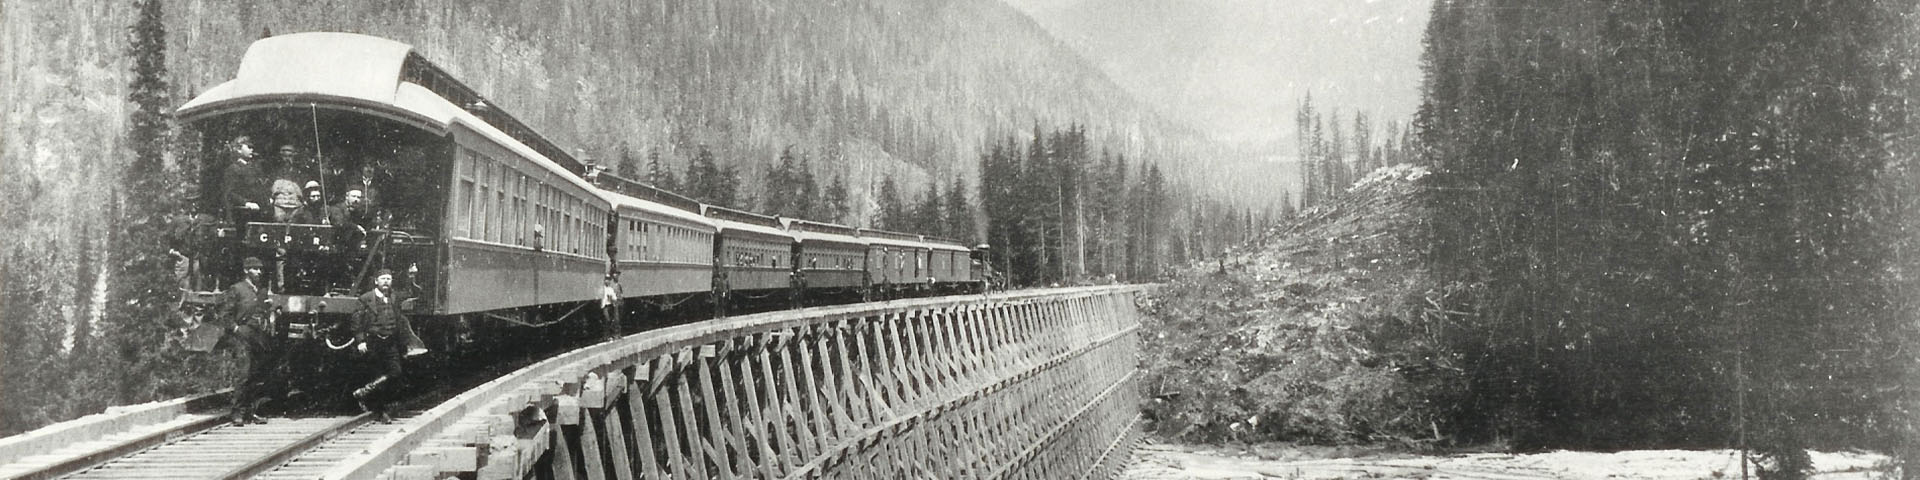 Photo en noir et blanc d'un train traversant un pont de bois